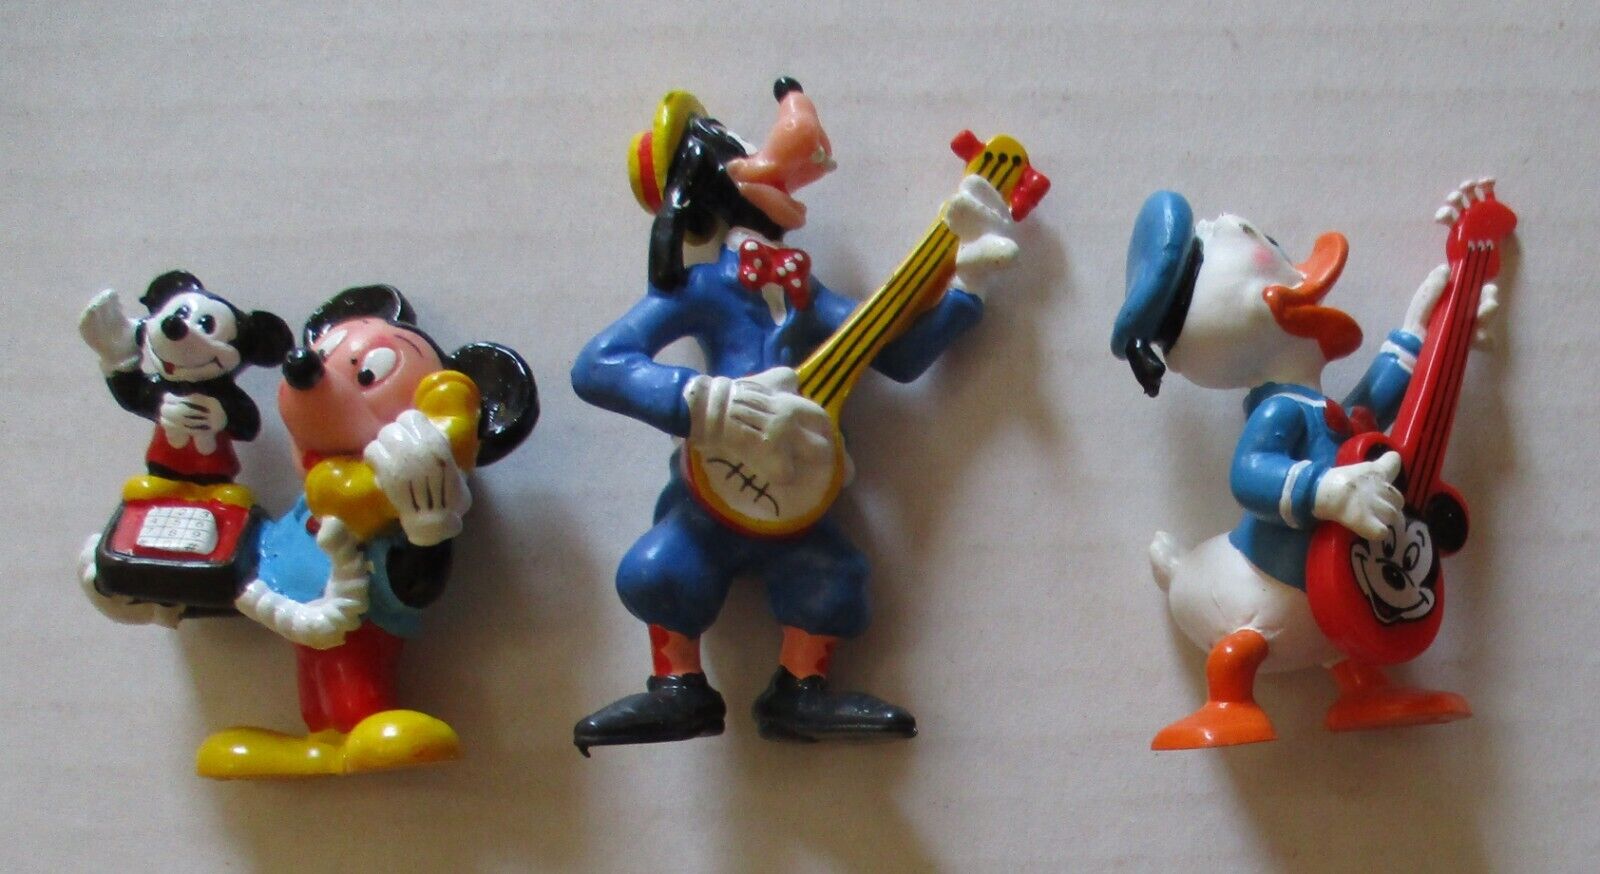 Lot of 3 Vintage Disney Applause Mini PVC Figures 2-3